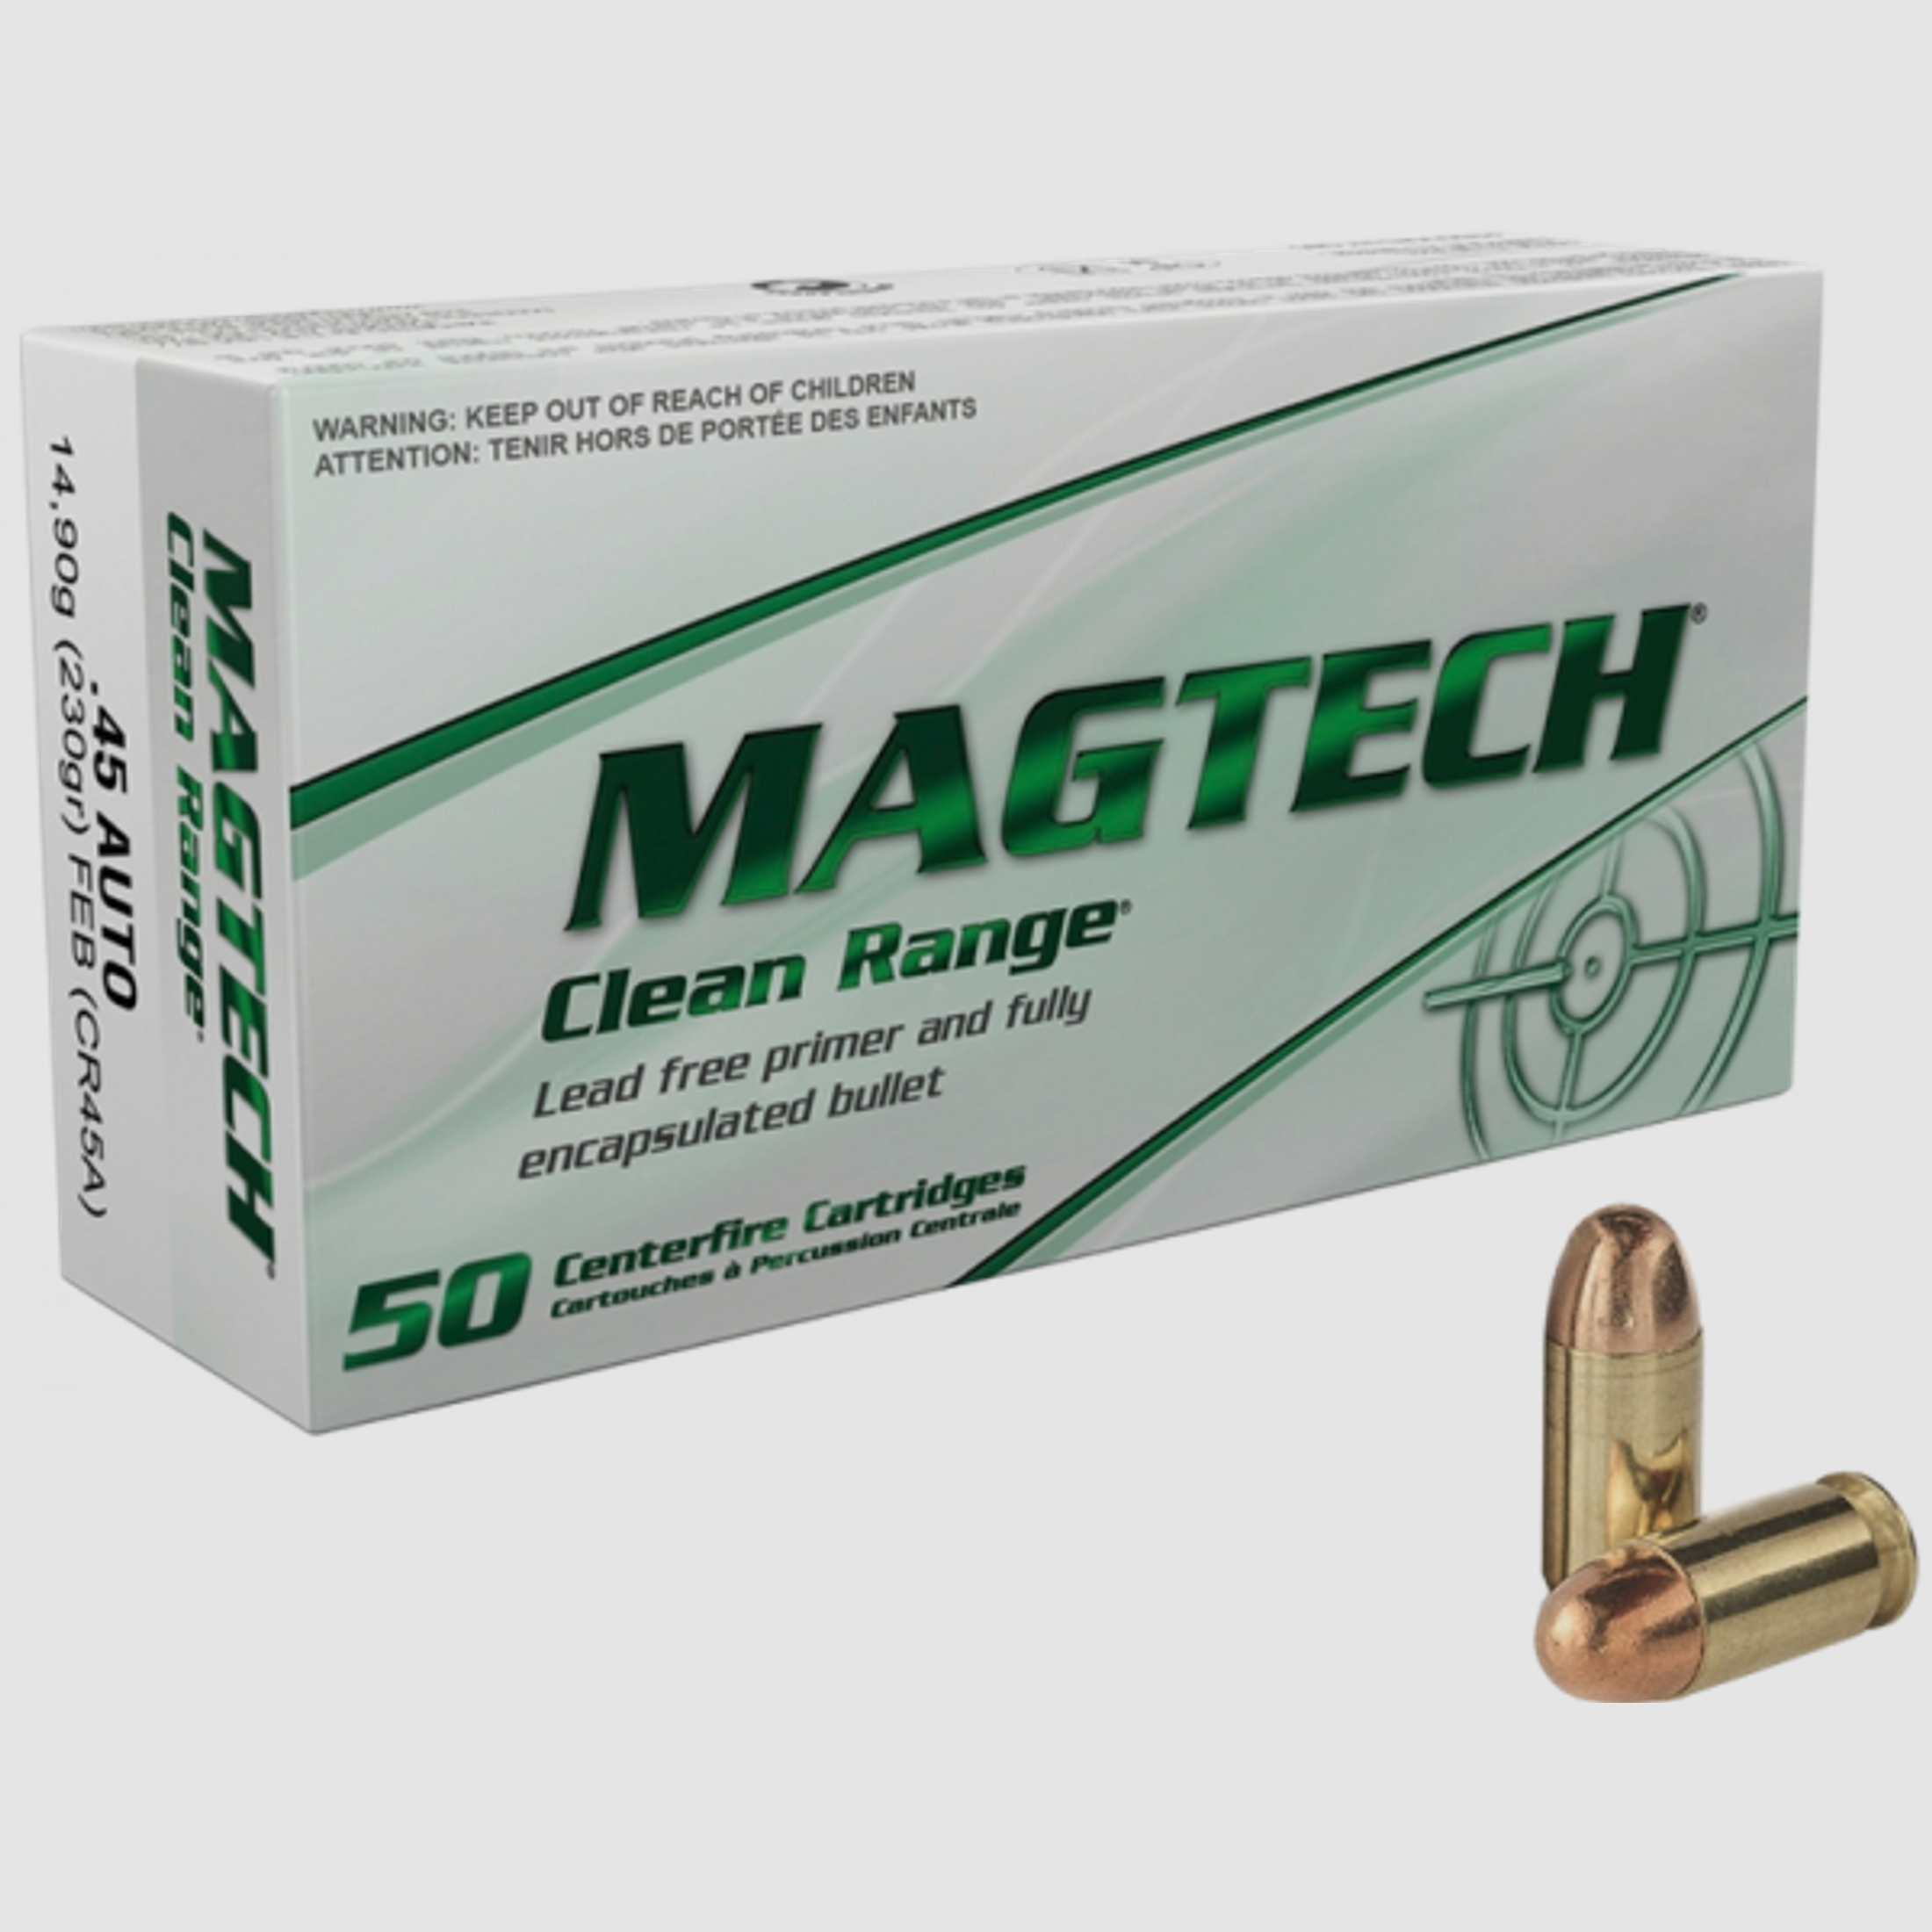 Magtech Clean Range .45 ACP Magtech FEB 230 grs Pistolenpatronen